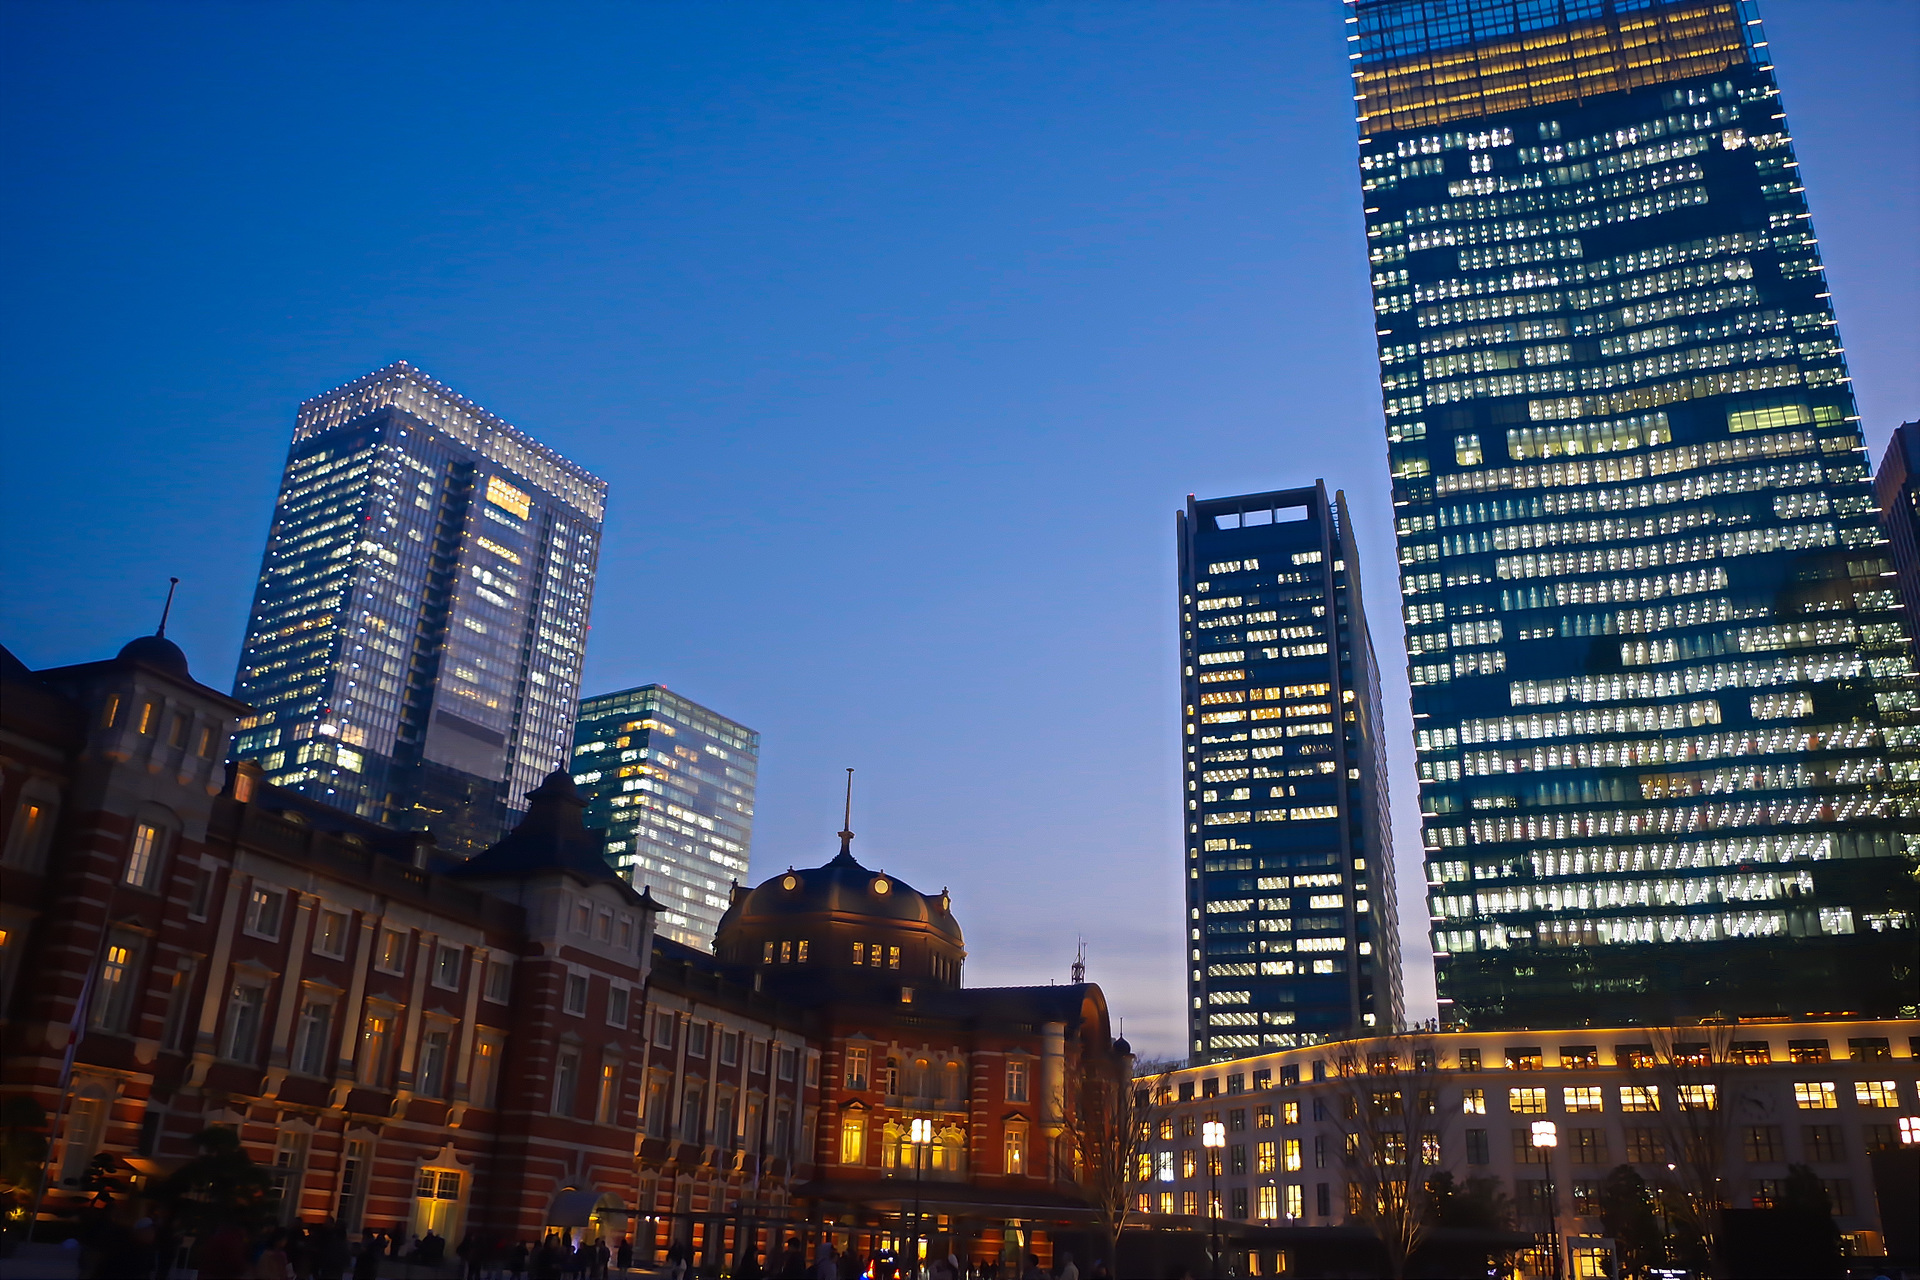 夜景 花火 イルミ 東京駅と高層ビル群 壁紙19x1280 壁紙館